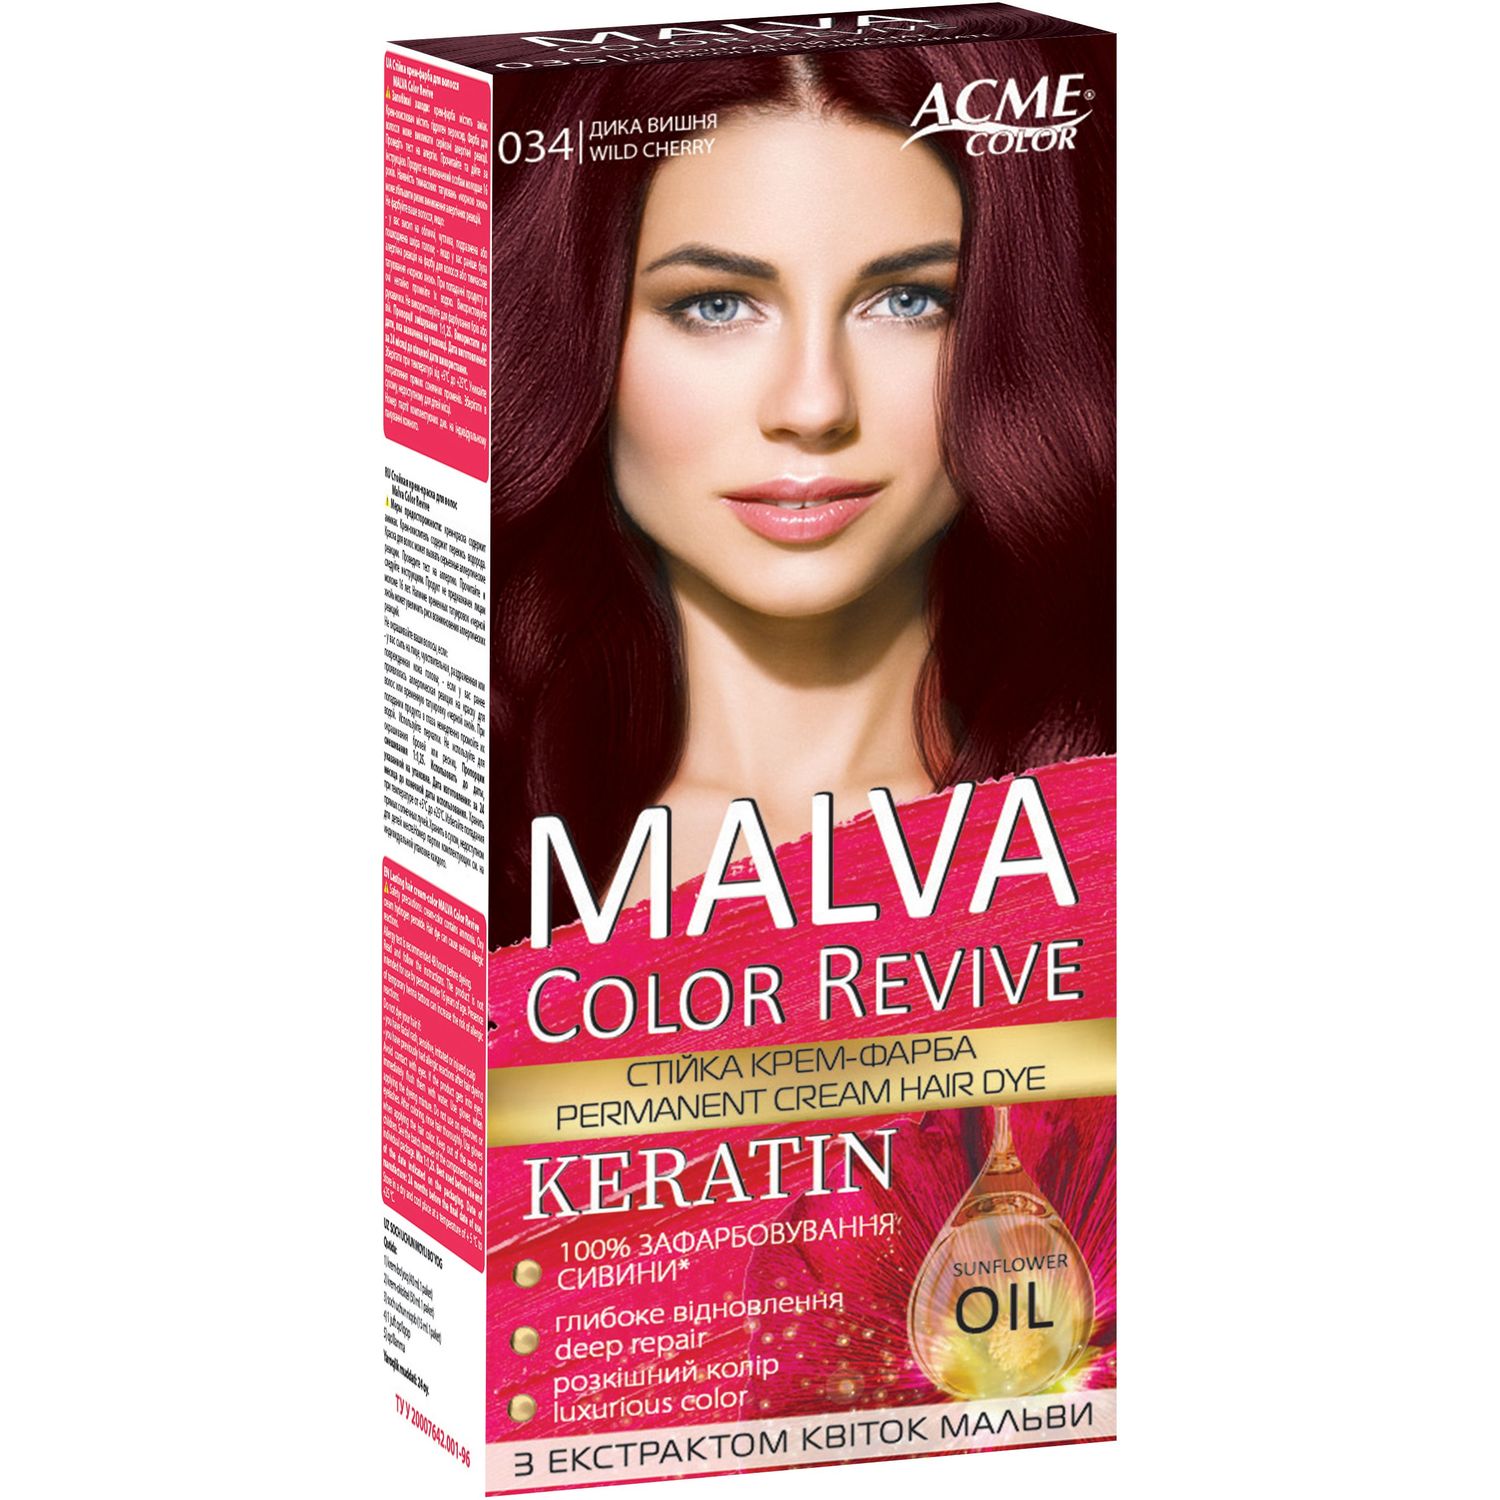 Устойчивая крем-краска для волос Malva Color Revive оттенок 034 Дикая вишня - фото 1